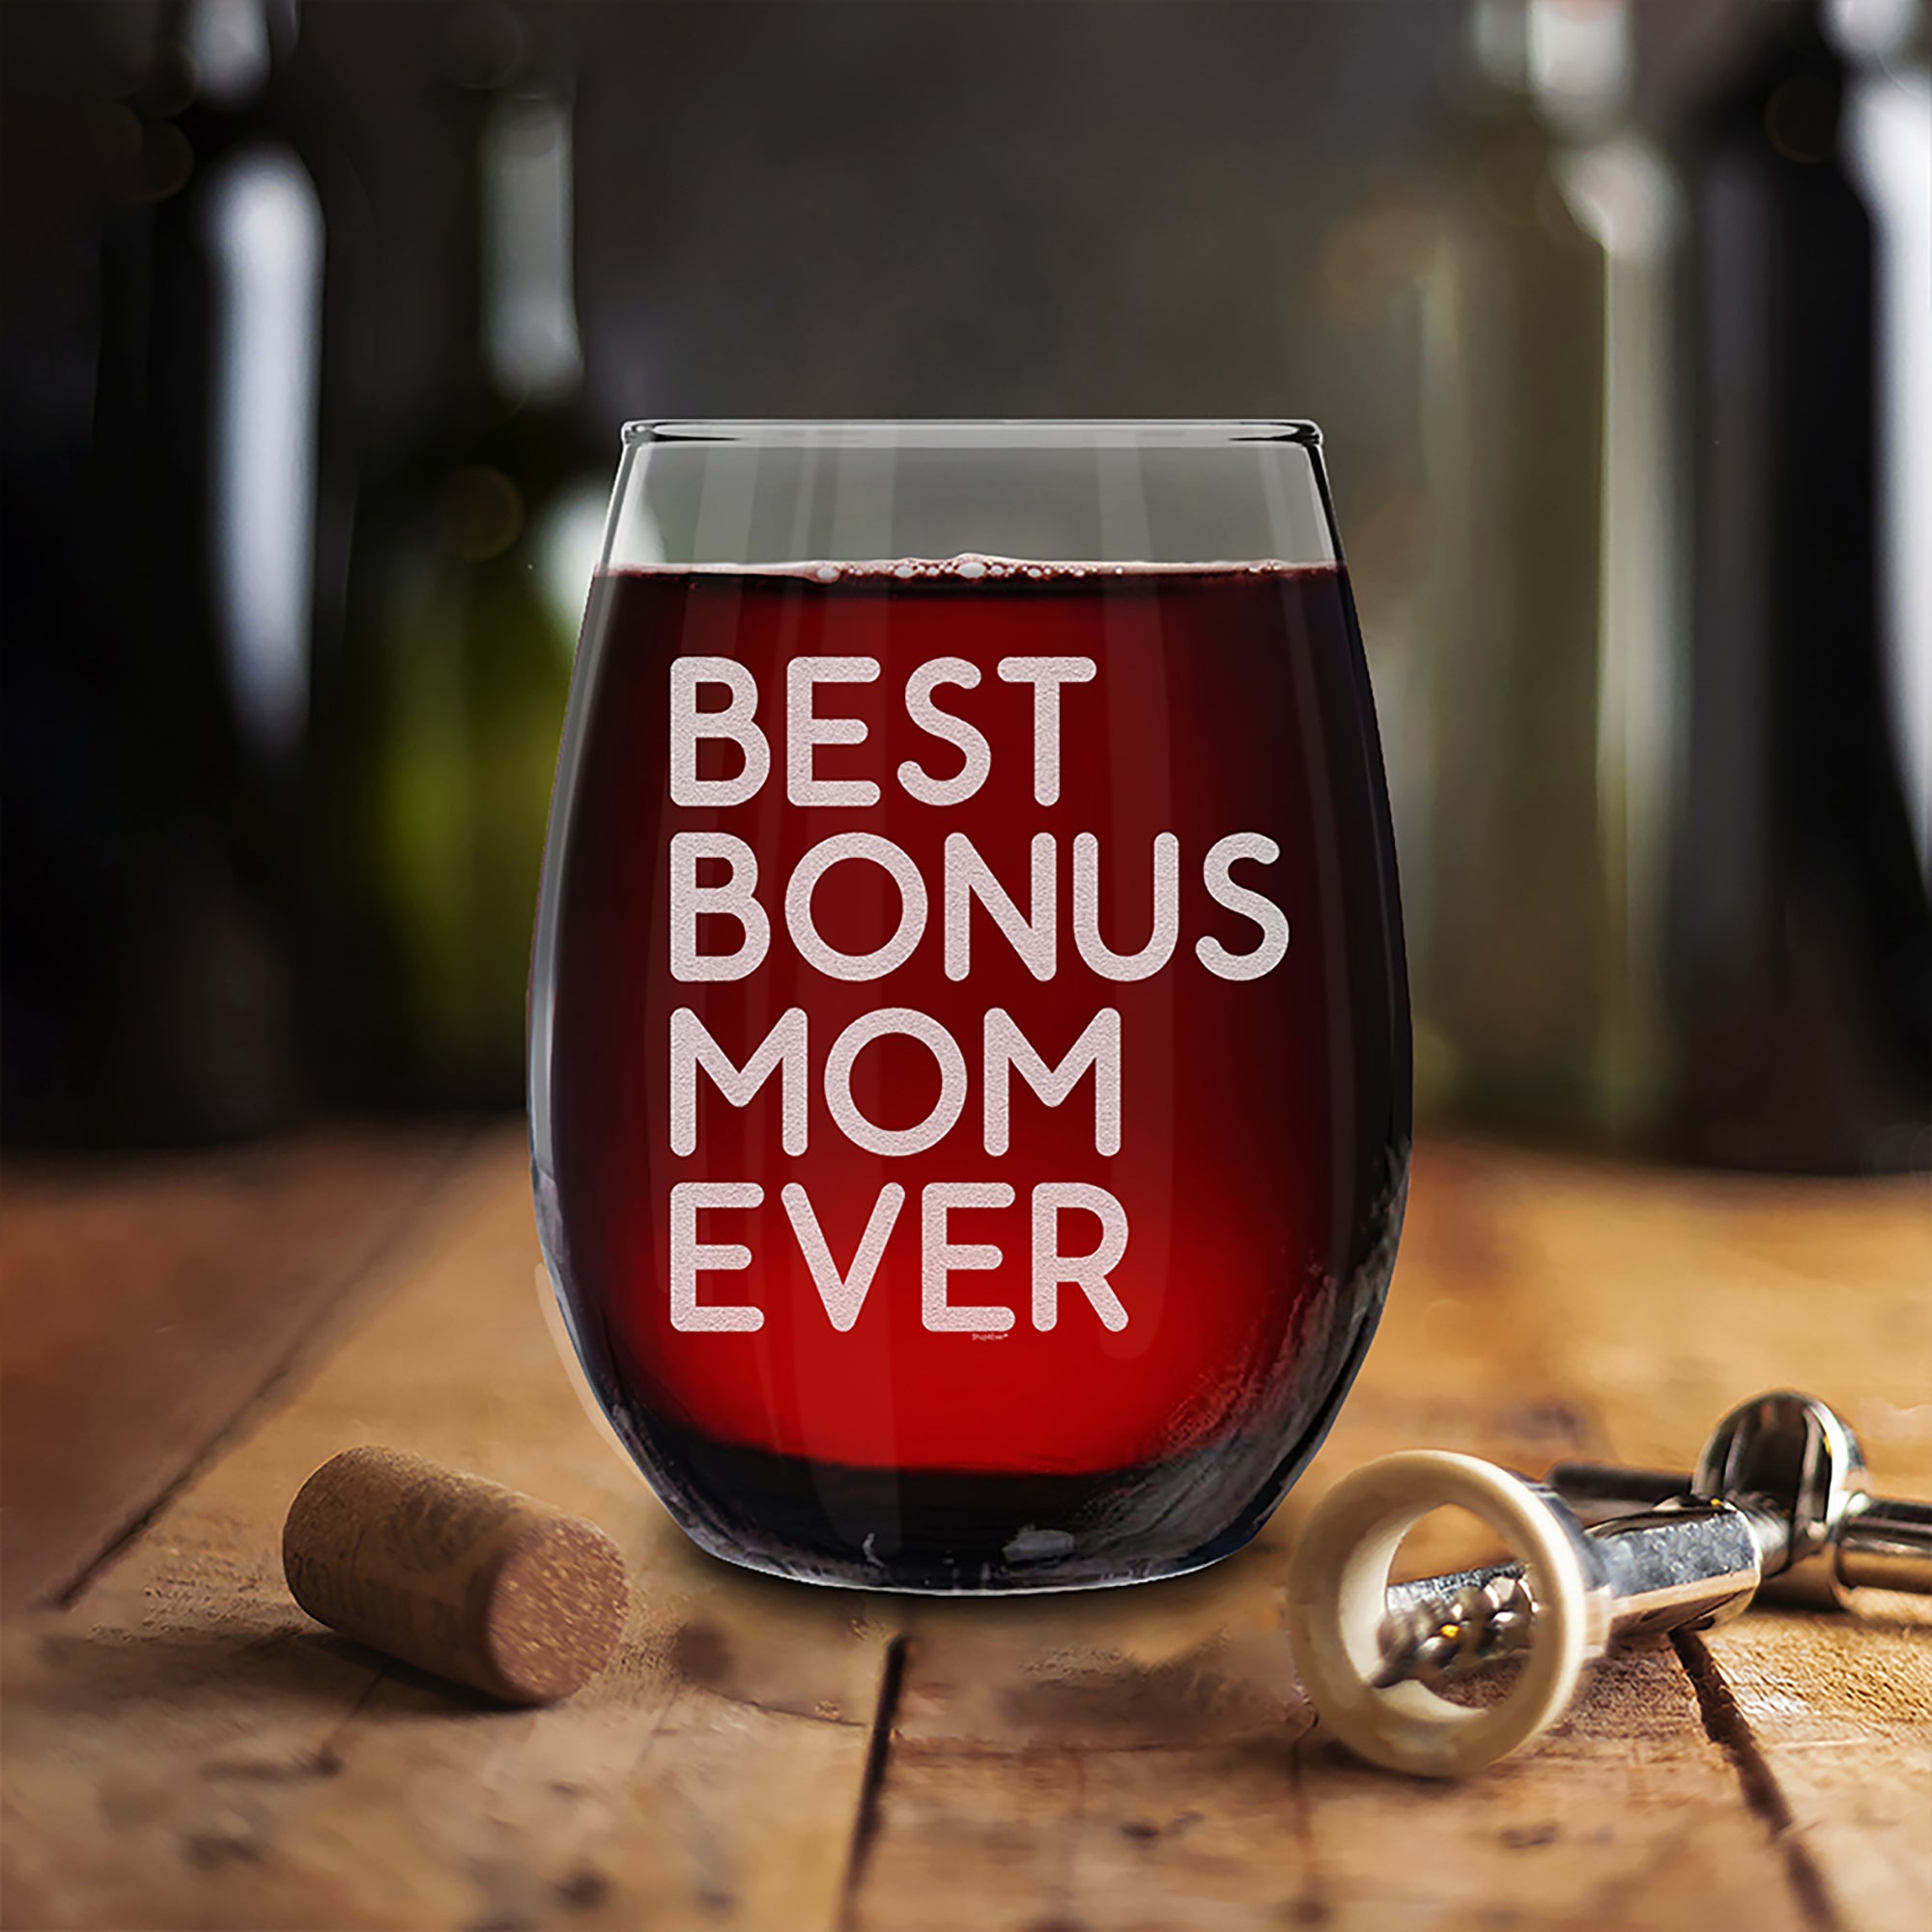 Best Bonus Mom Ever Engraved Stemless Wine Glass